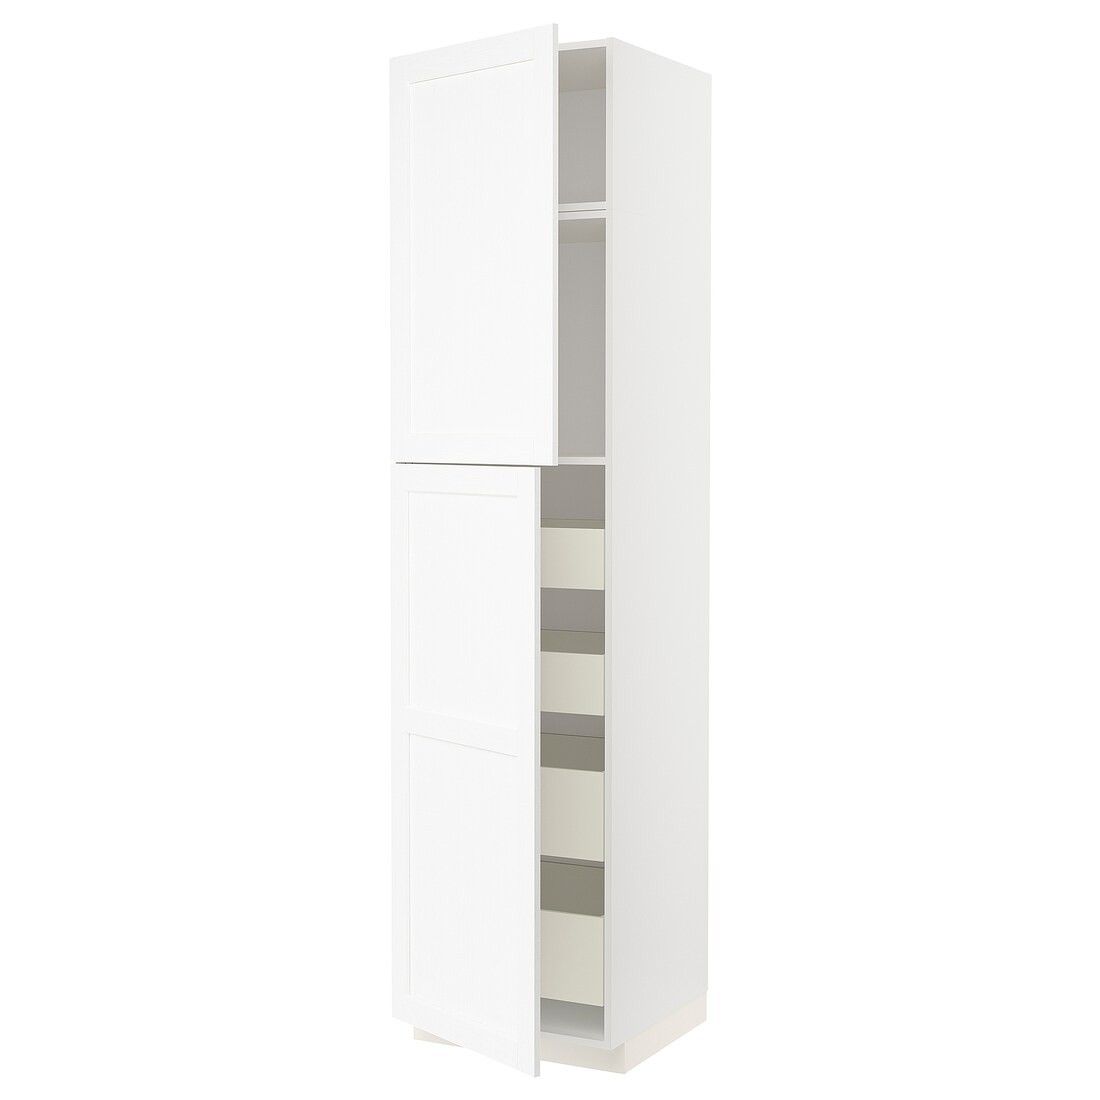 IKEA METOD МЕТОД / MAXIMERA МАКСИМЕРА Шкаф высокий 2 двери / 4 ящика, белый Enköping / белый имитация дерева, 60x60x240 см 89473562 | 894.735.62